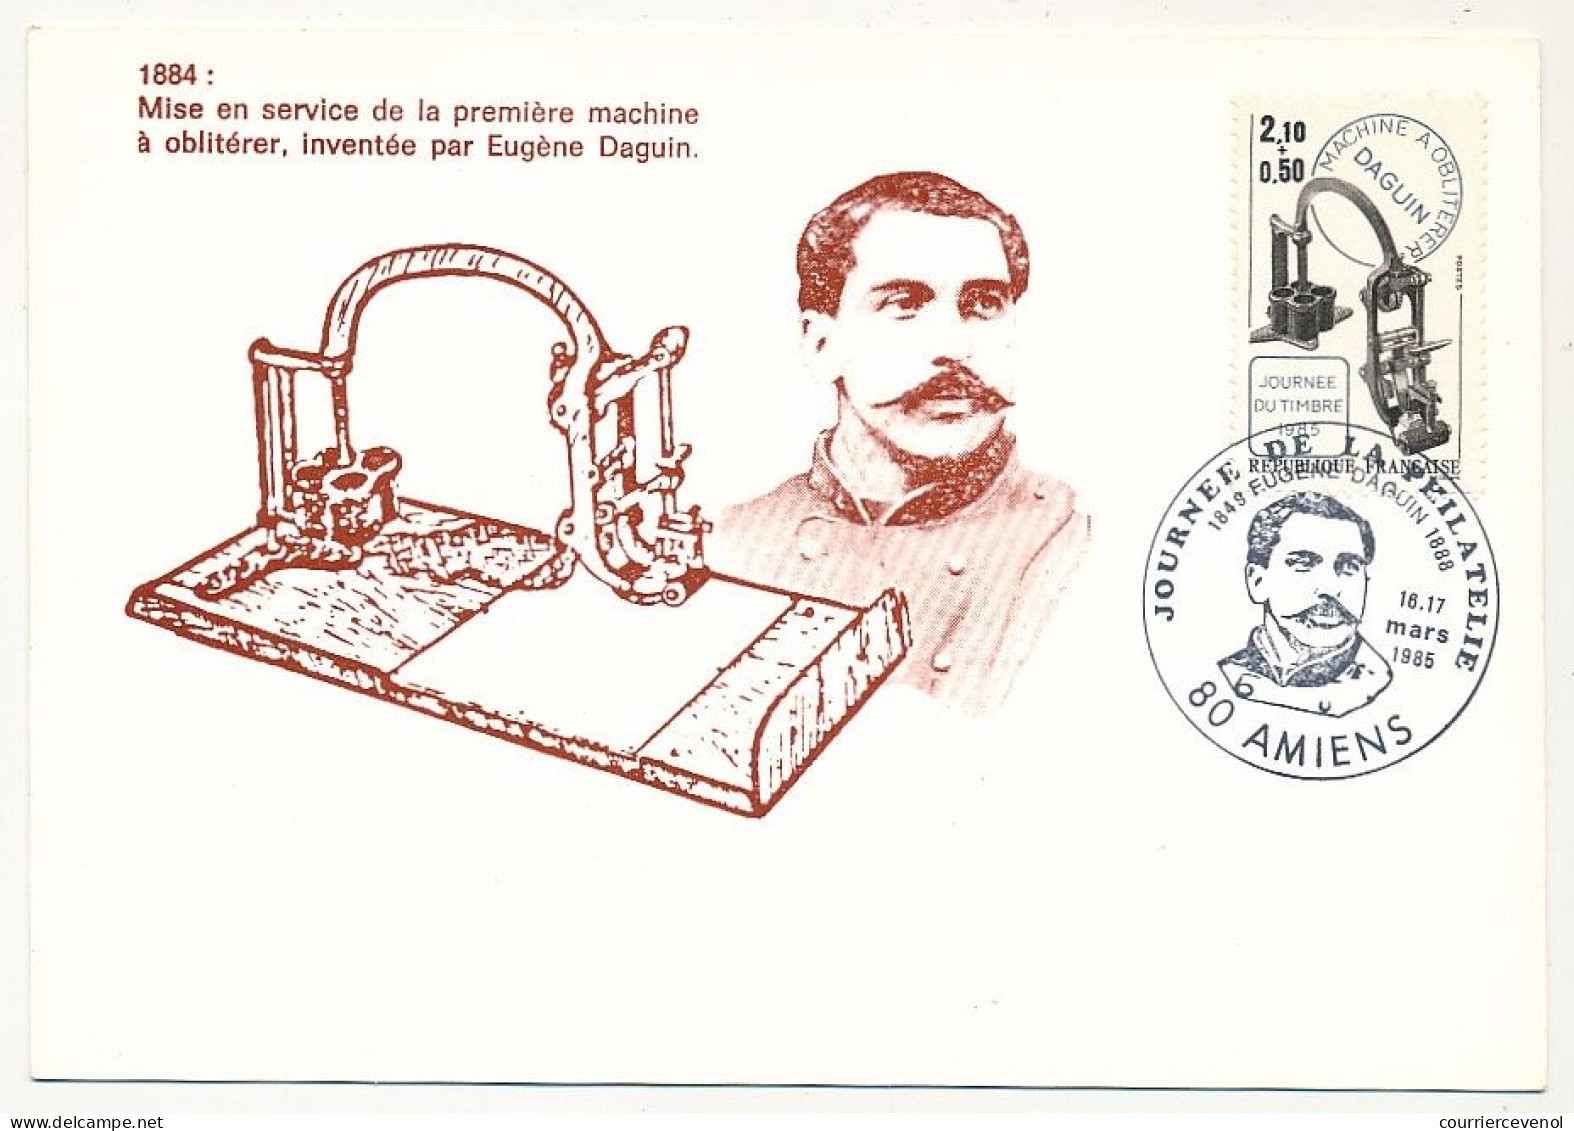 FRANCE => 80 - AMIENS - Carte Maximum "Journée De La Philatélie" 16/17 Mars 1985 - 2,10 + 0,50 Machine Daguin - Cartas & Documentos